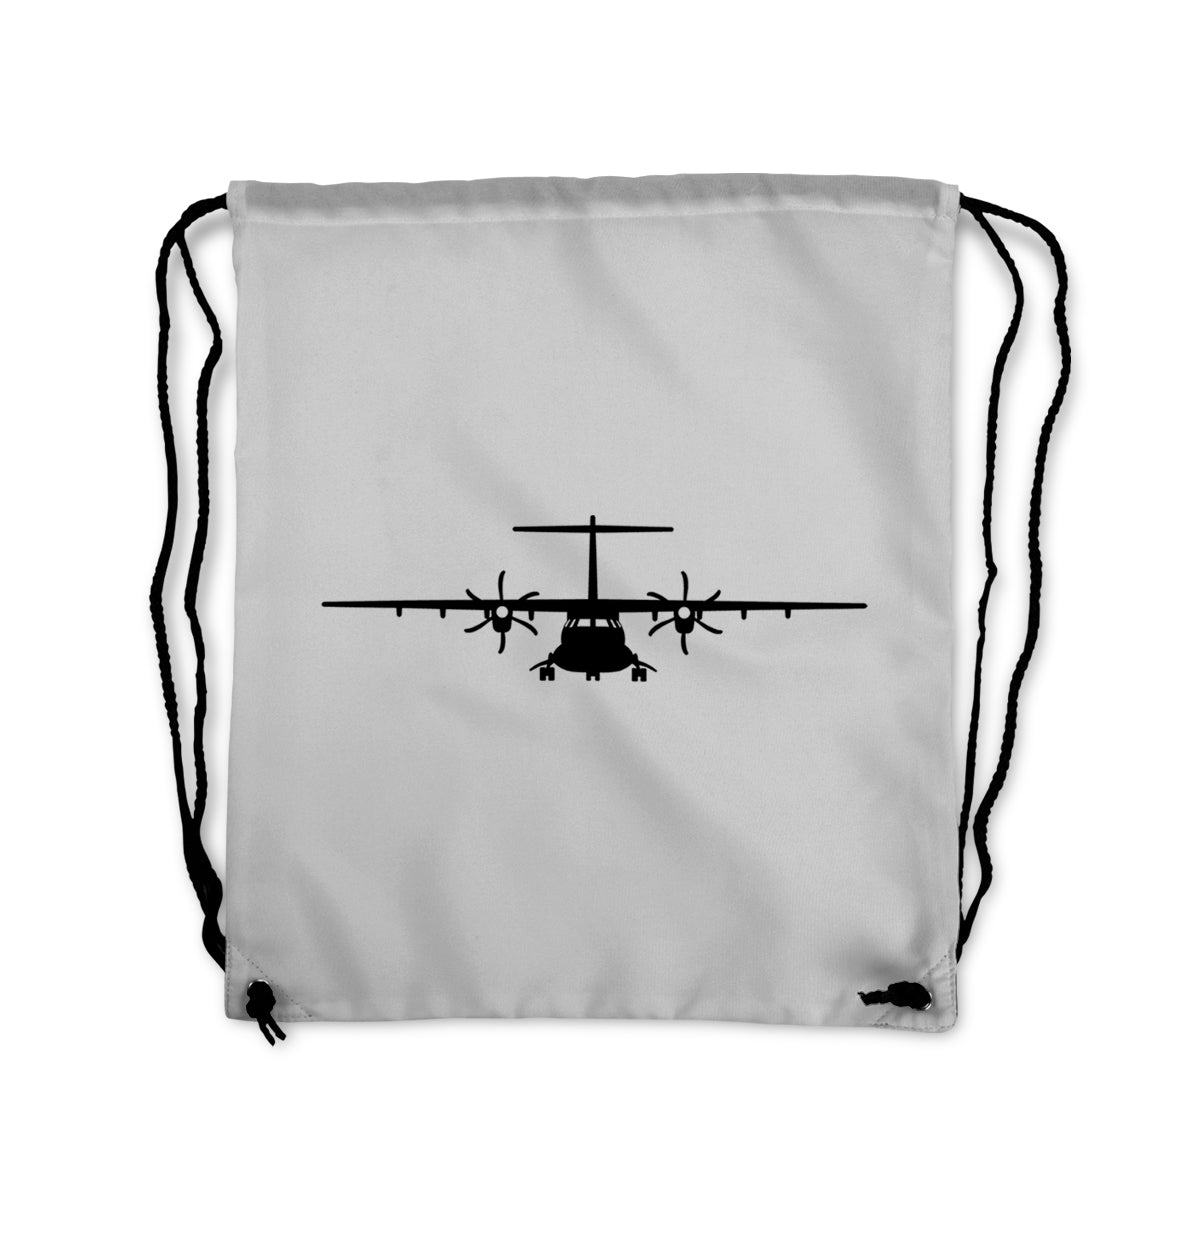 ATR-72 Silhouette Designed Drawstring Bags